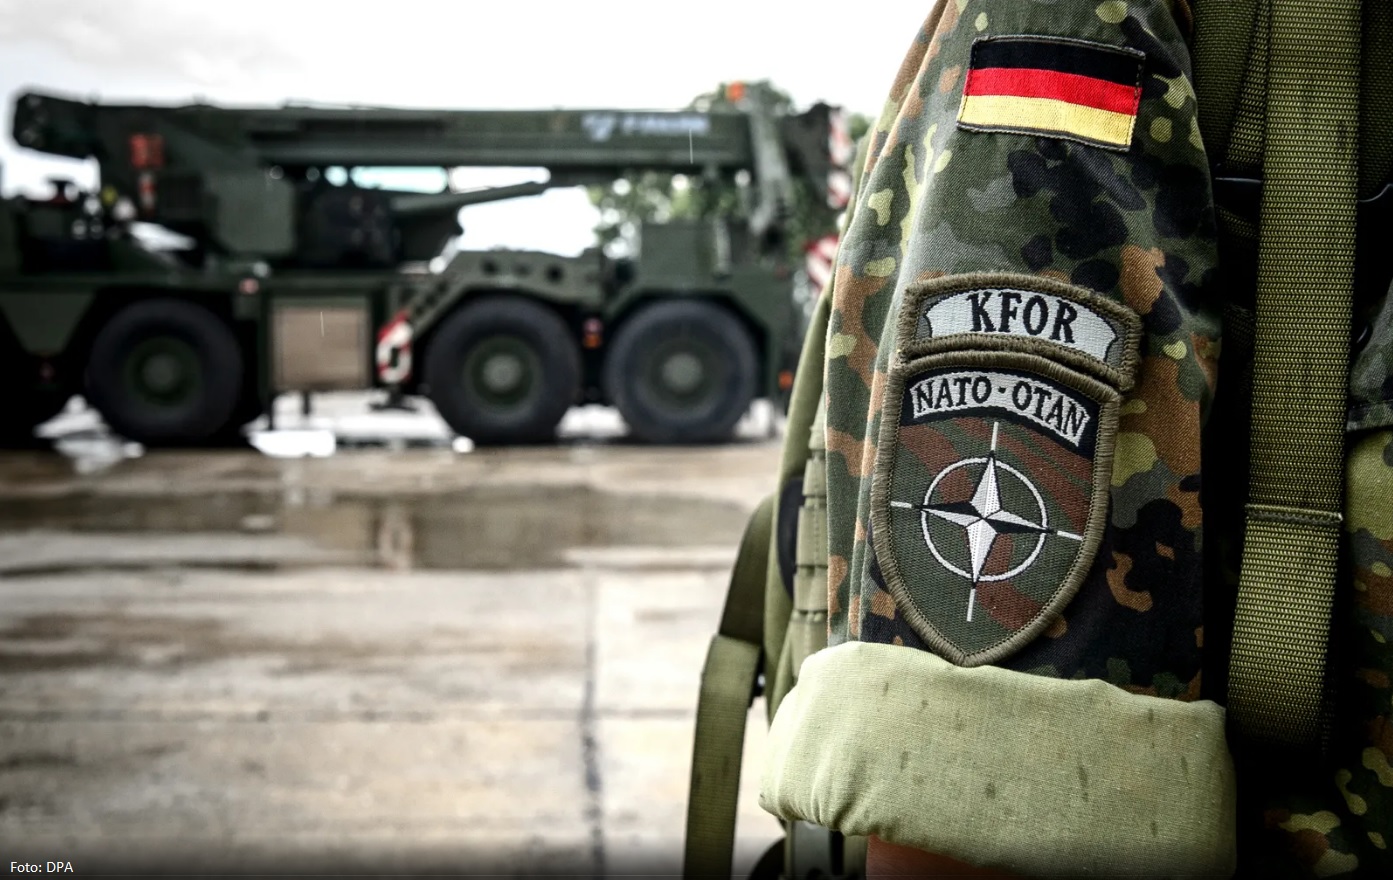 qeveria-gjermane-voton-pro-zgjatjes-se-mandatit-te-ushtareve-ne-kosove